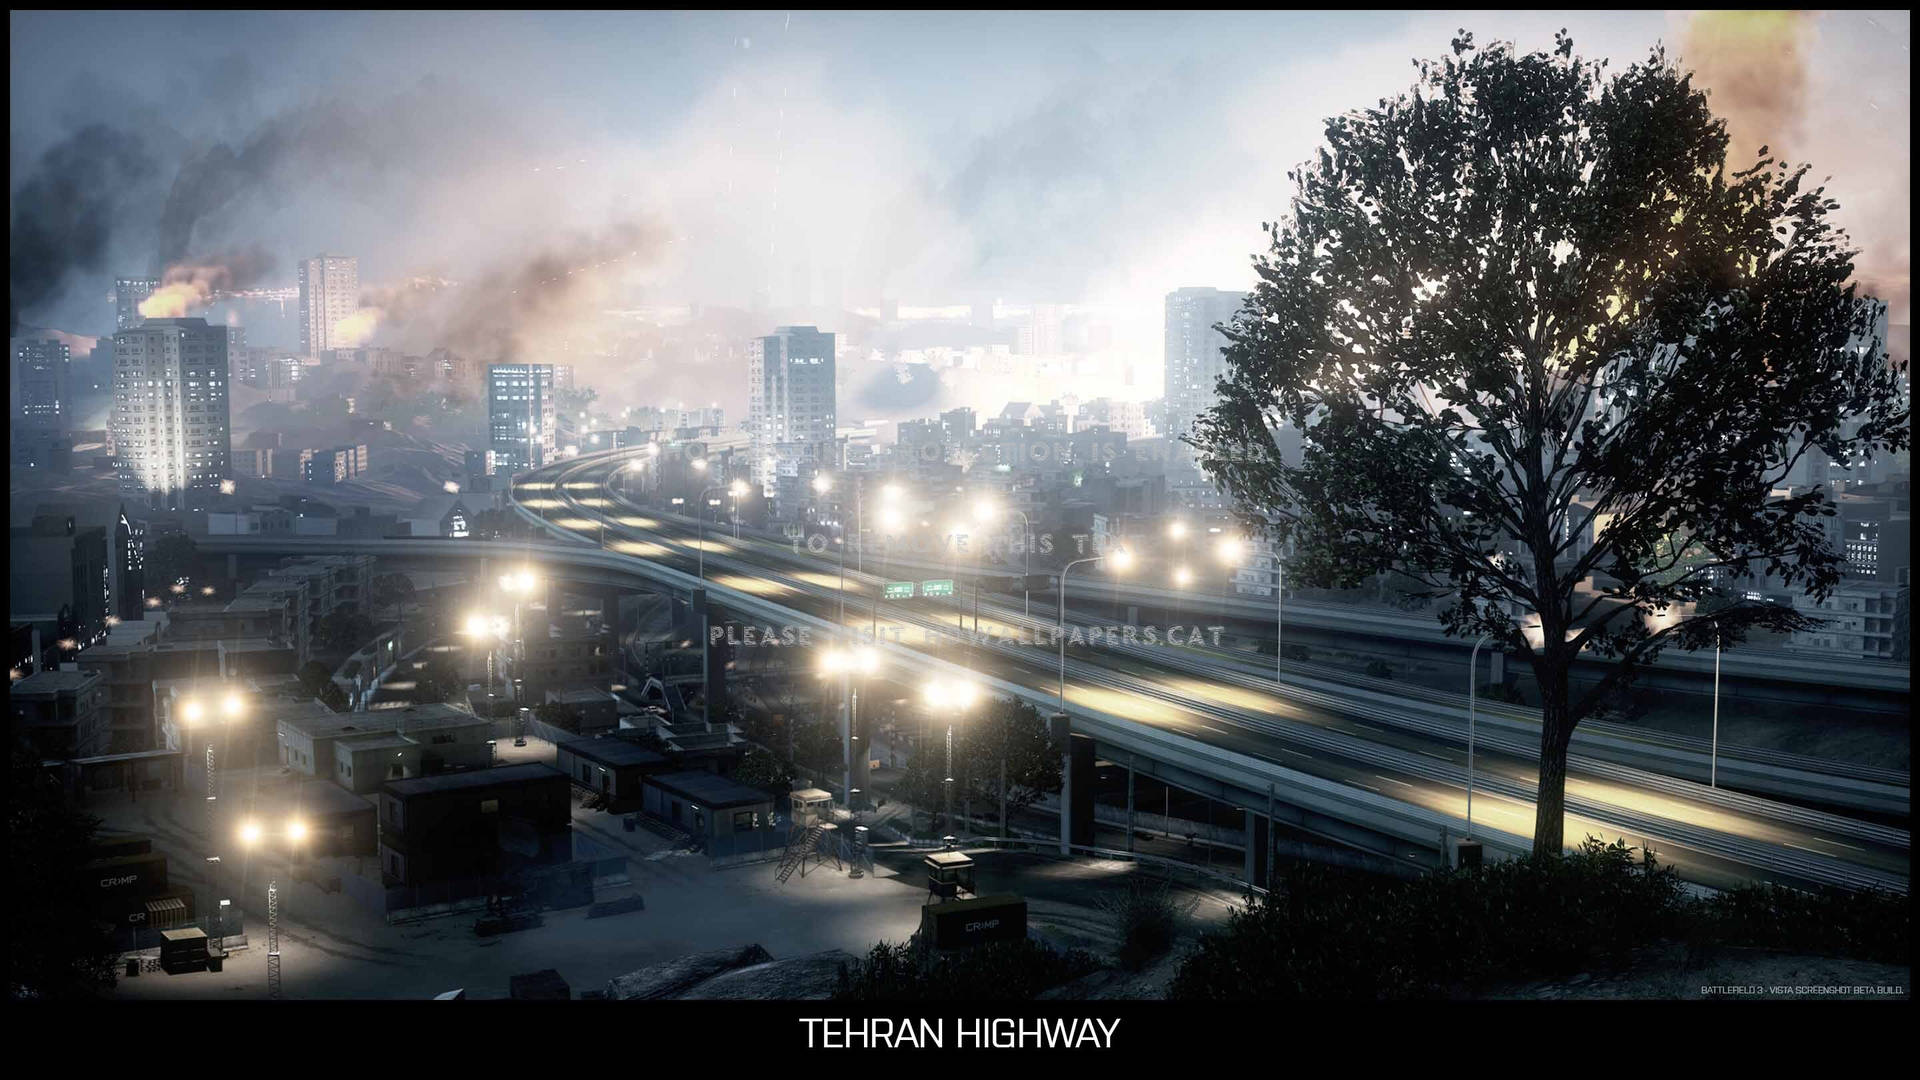 Teheran Highway Smoke skaber en mystisk og dramatisk stemning. Wallpaper